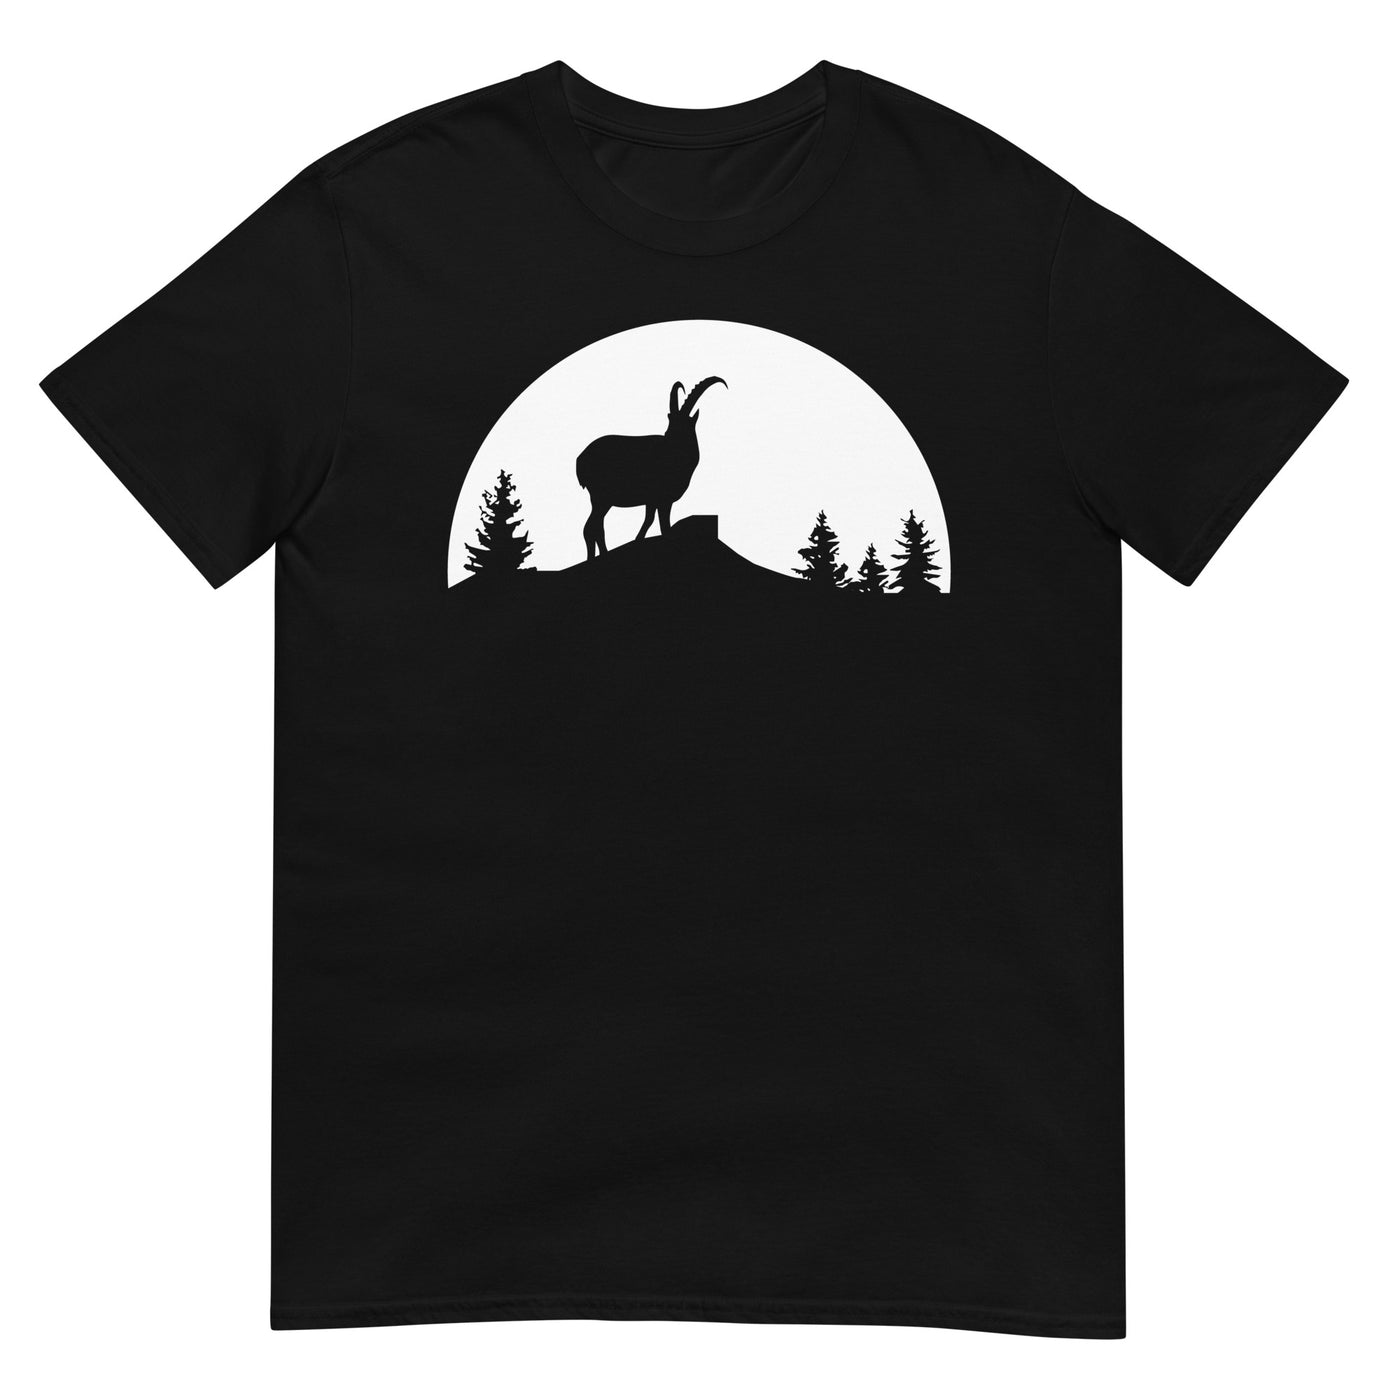 Sonne_-_Goat_-_(B) - Unisex Basic Softstyle T-Shirt | Gildan 64000 xxx yyy zzz Black